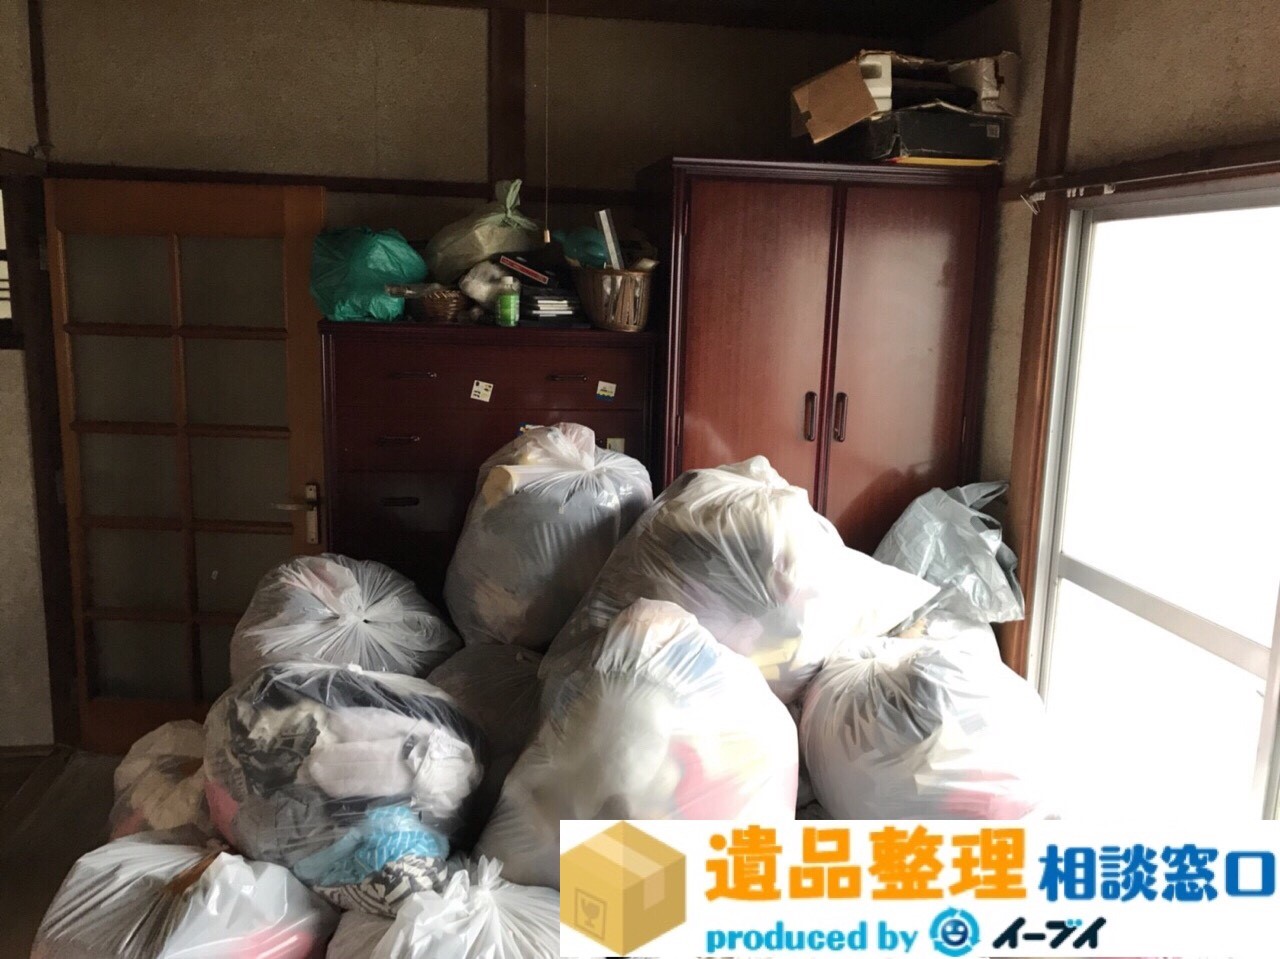 奈良県五條市で遺品整理の依頼で家具や衣類などの処分。のアイキャッチ